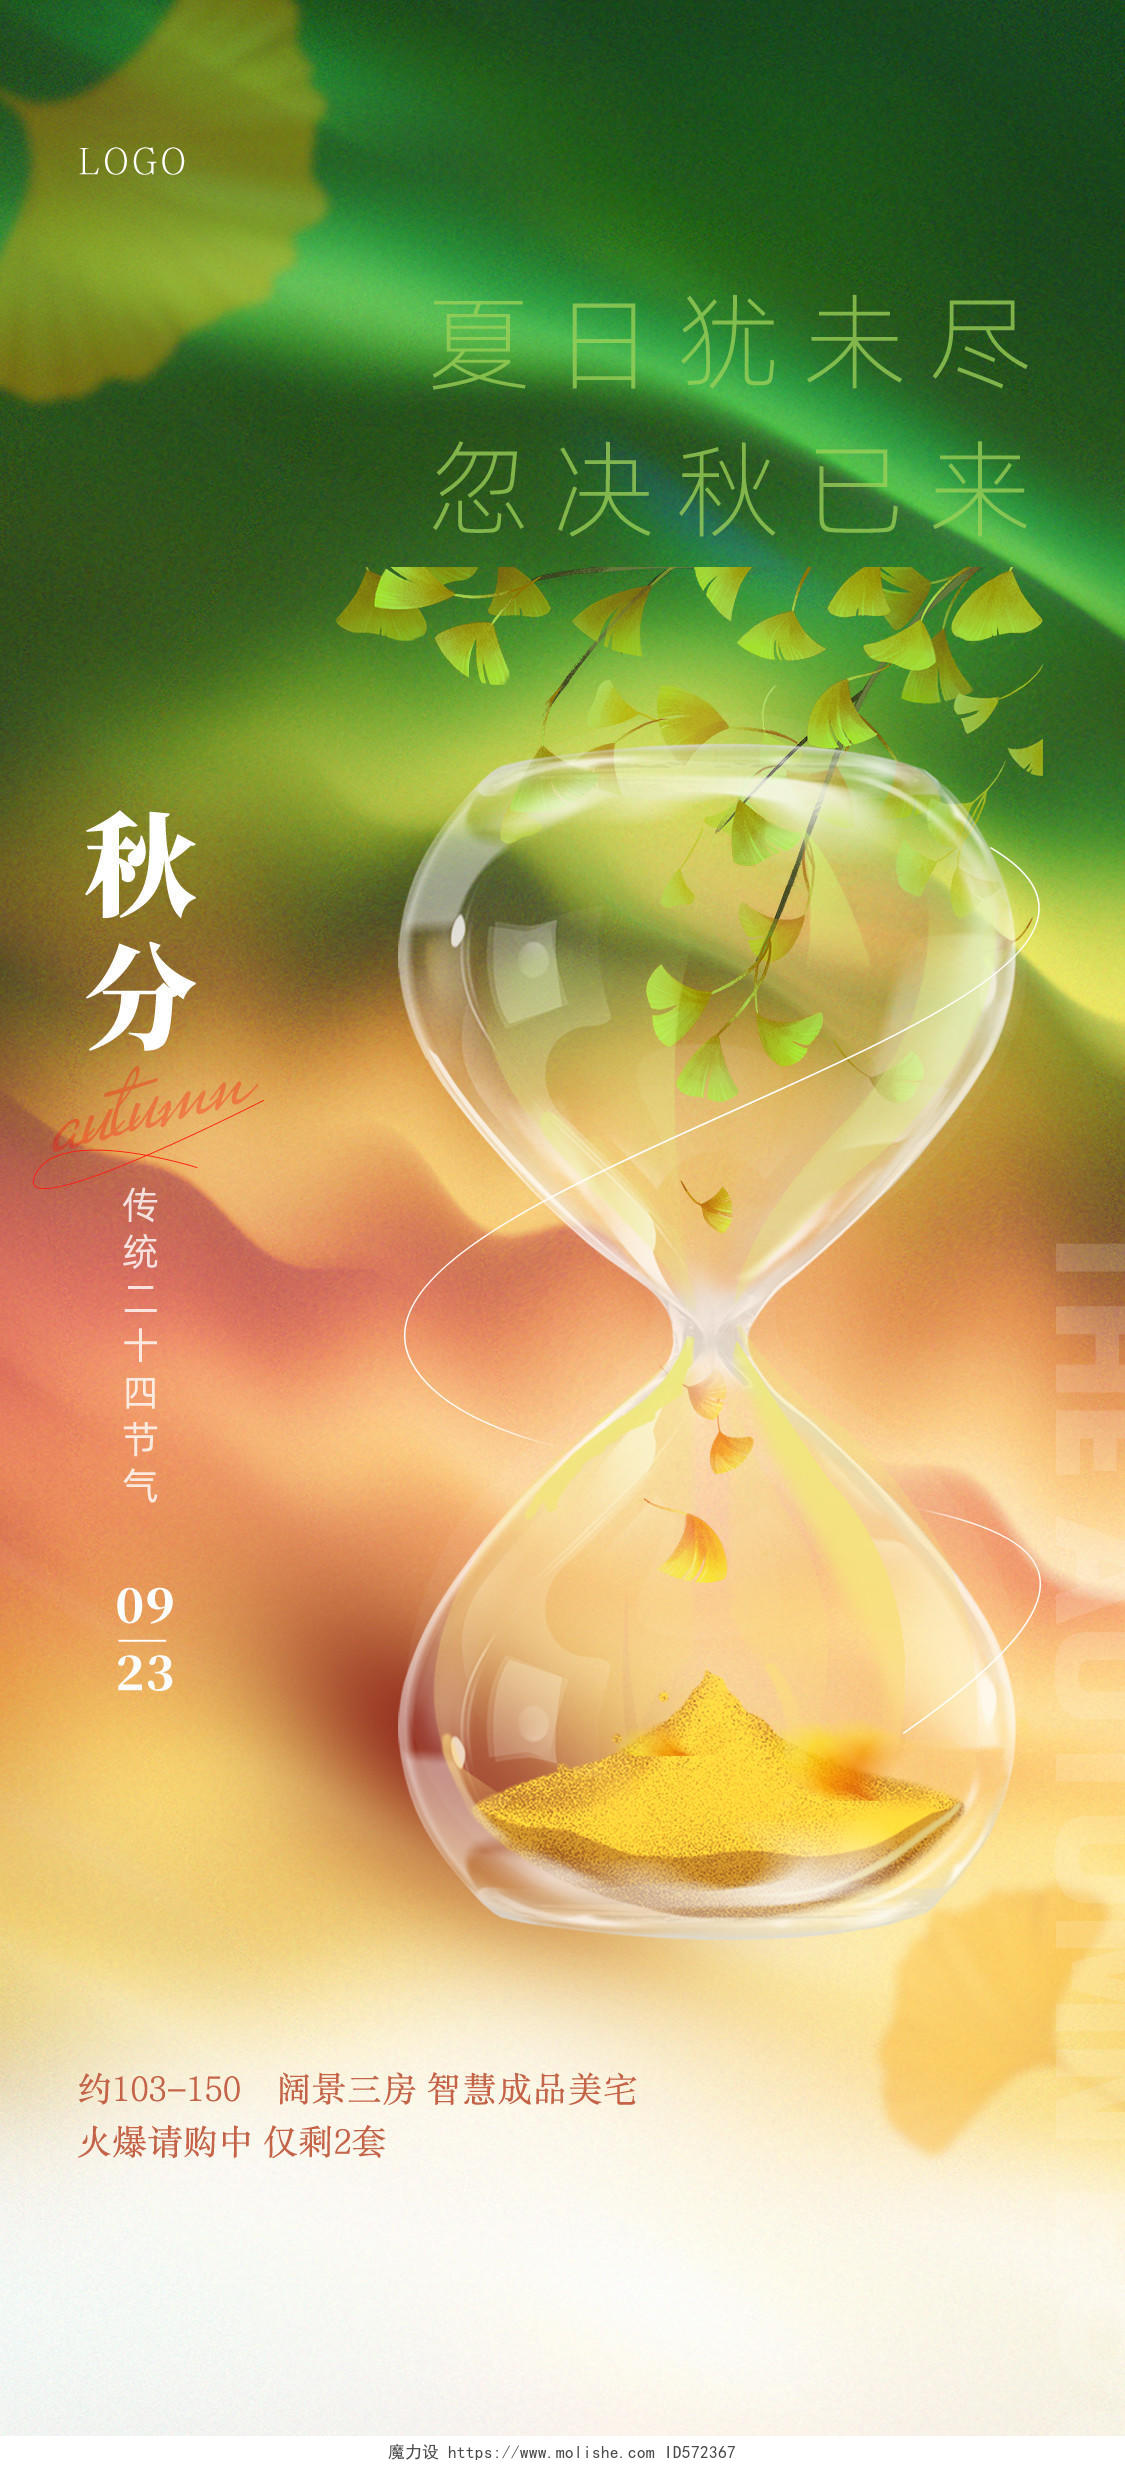 黄绿渐变创意水彩手绘二十四节气秋分手机宣传海报秋分海报节日